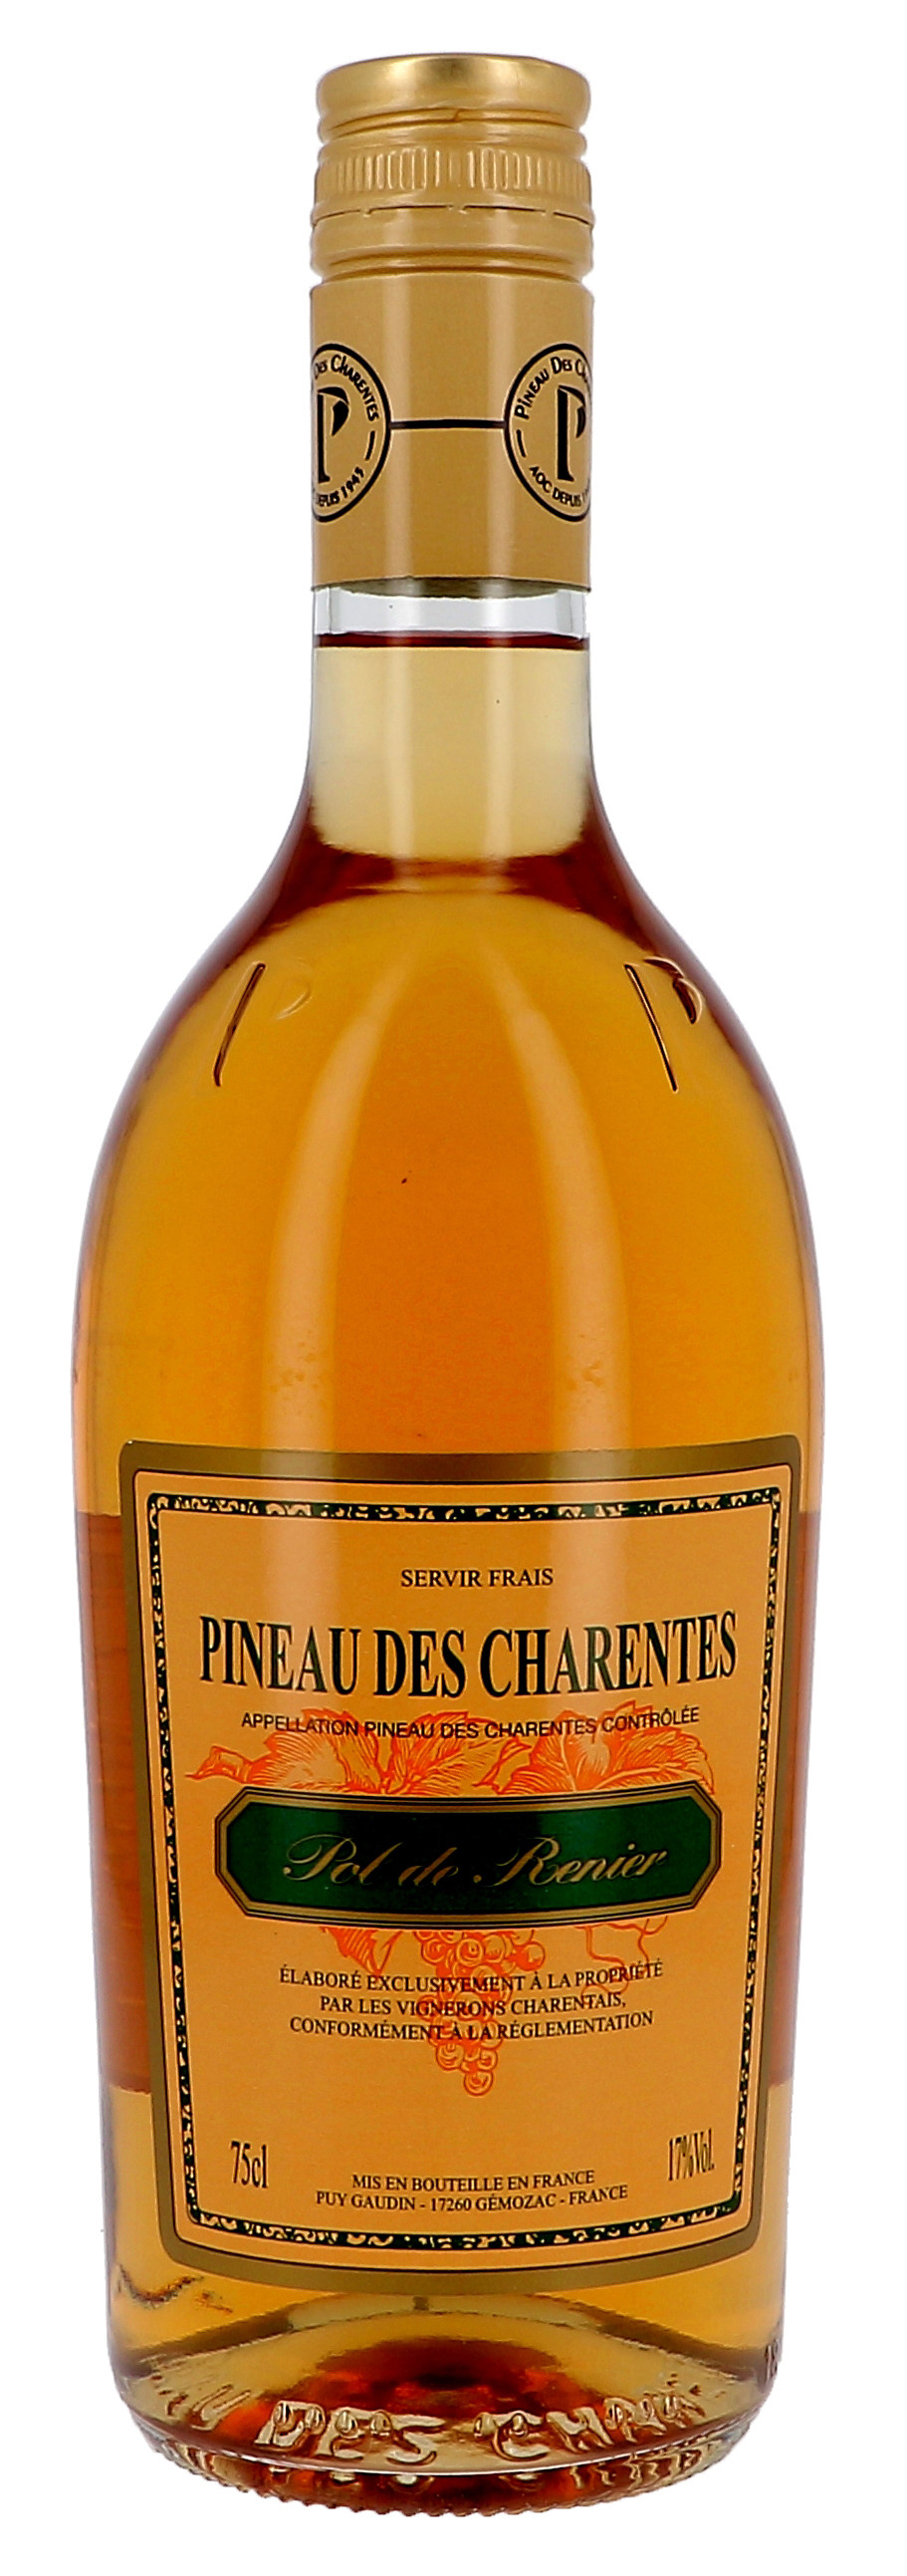 Pineau des Charentes Pol Renier blanc 75cl 17% (Pineau de charentes)